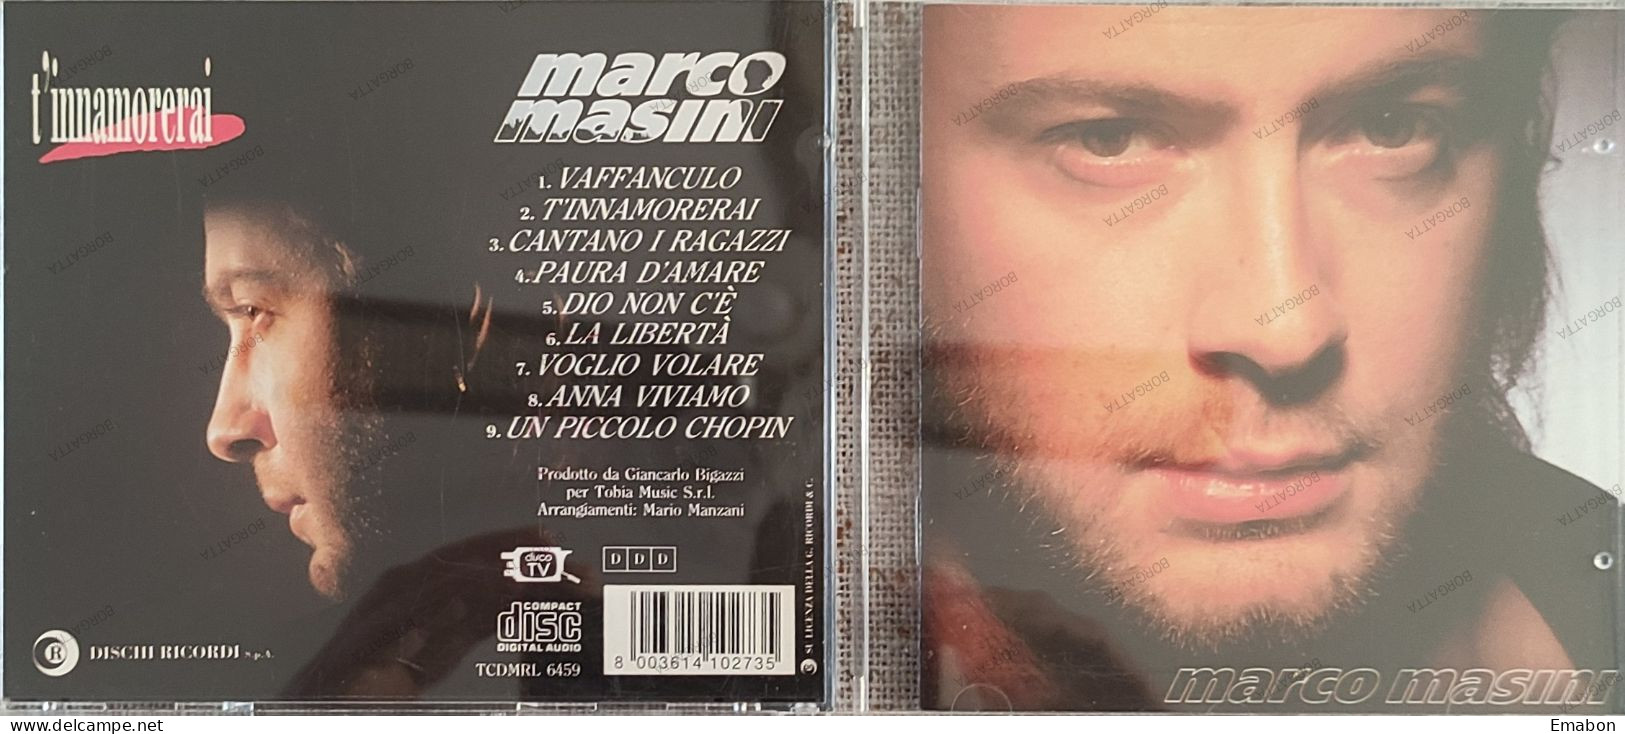 BORGATTA - ITALIANA  - Cd MARCO MASINI - T' INNAMORERAI  - DISCHI RICORDI 1993 -  USATO In Buono Stato - Other - Italian Music